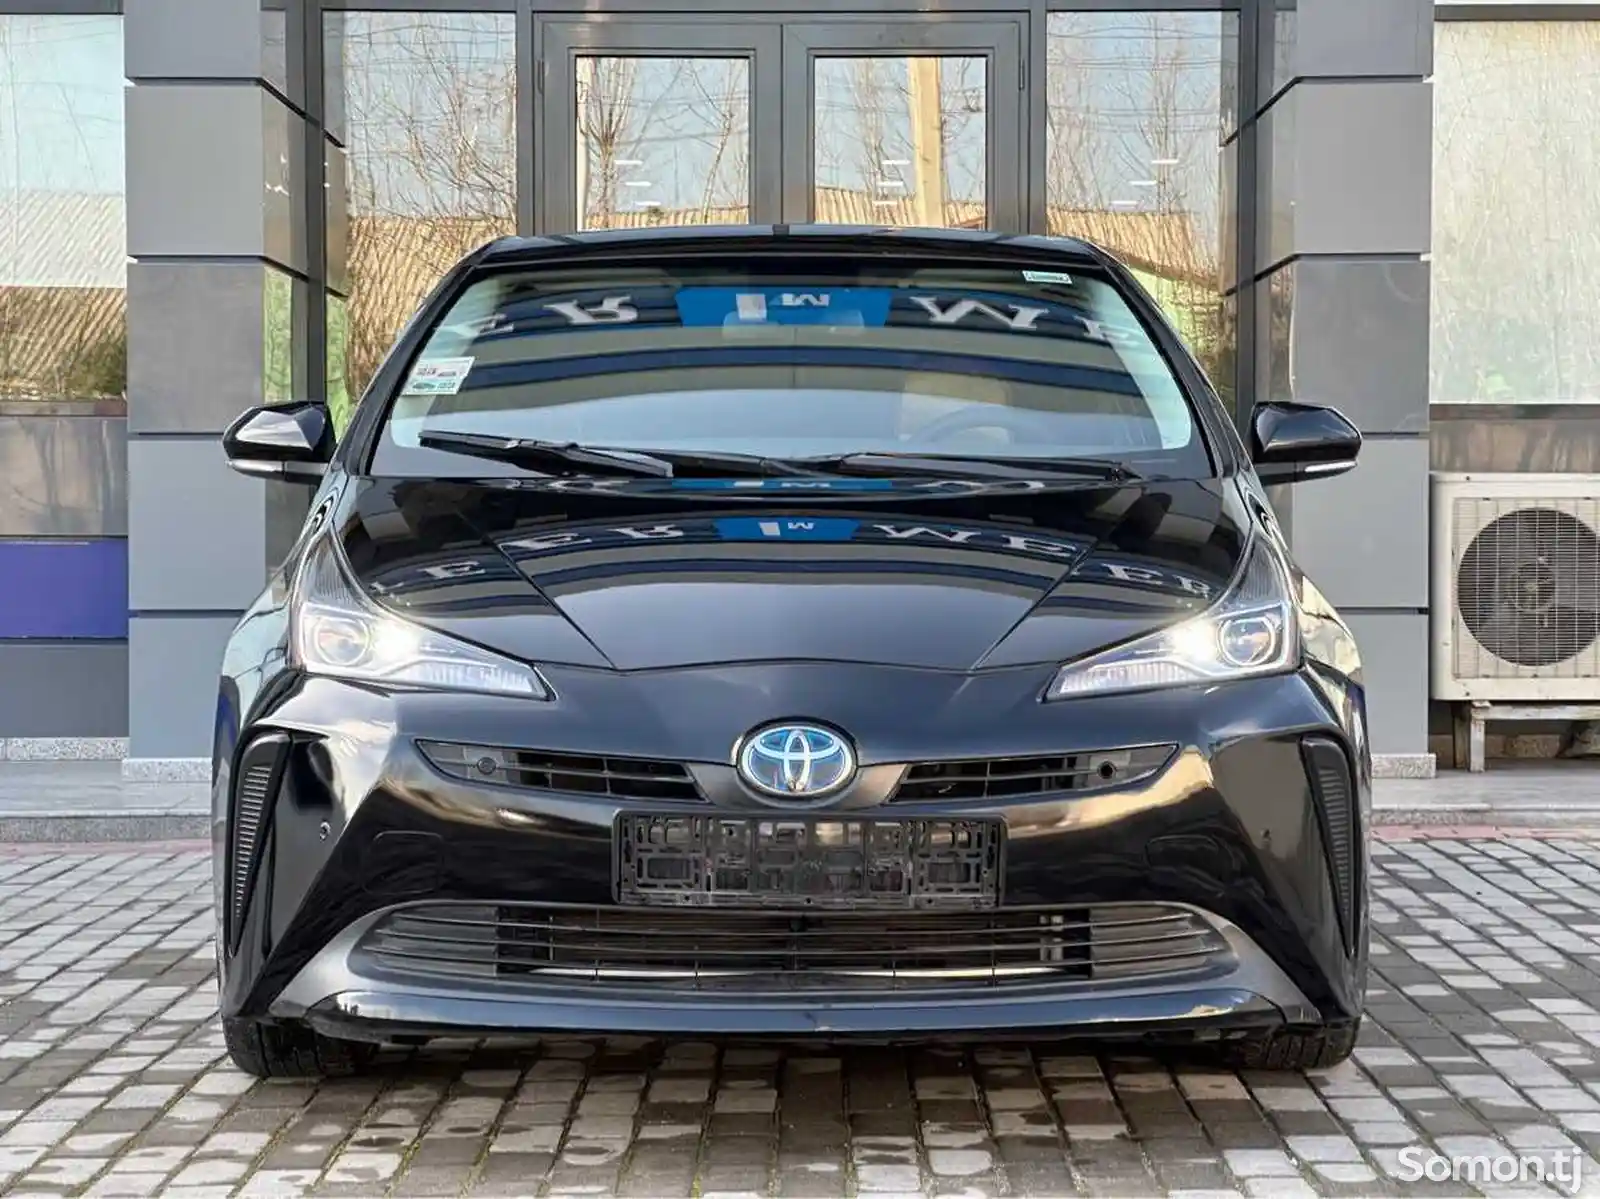 Toyota Prius, 2020-2